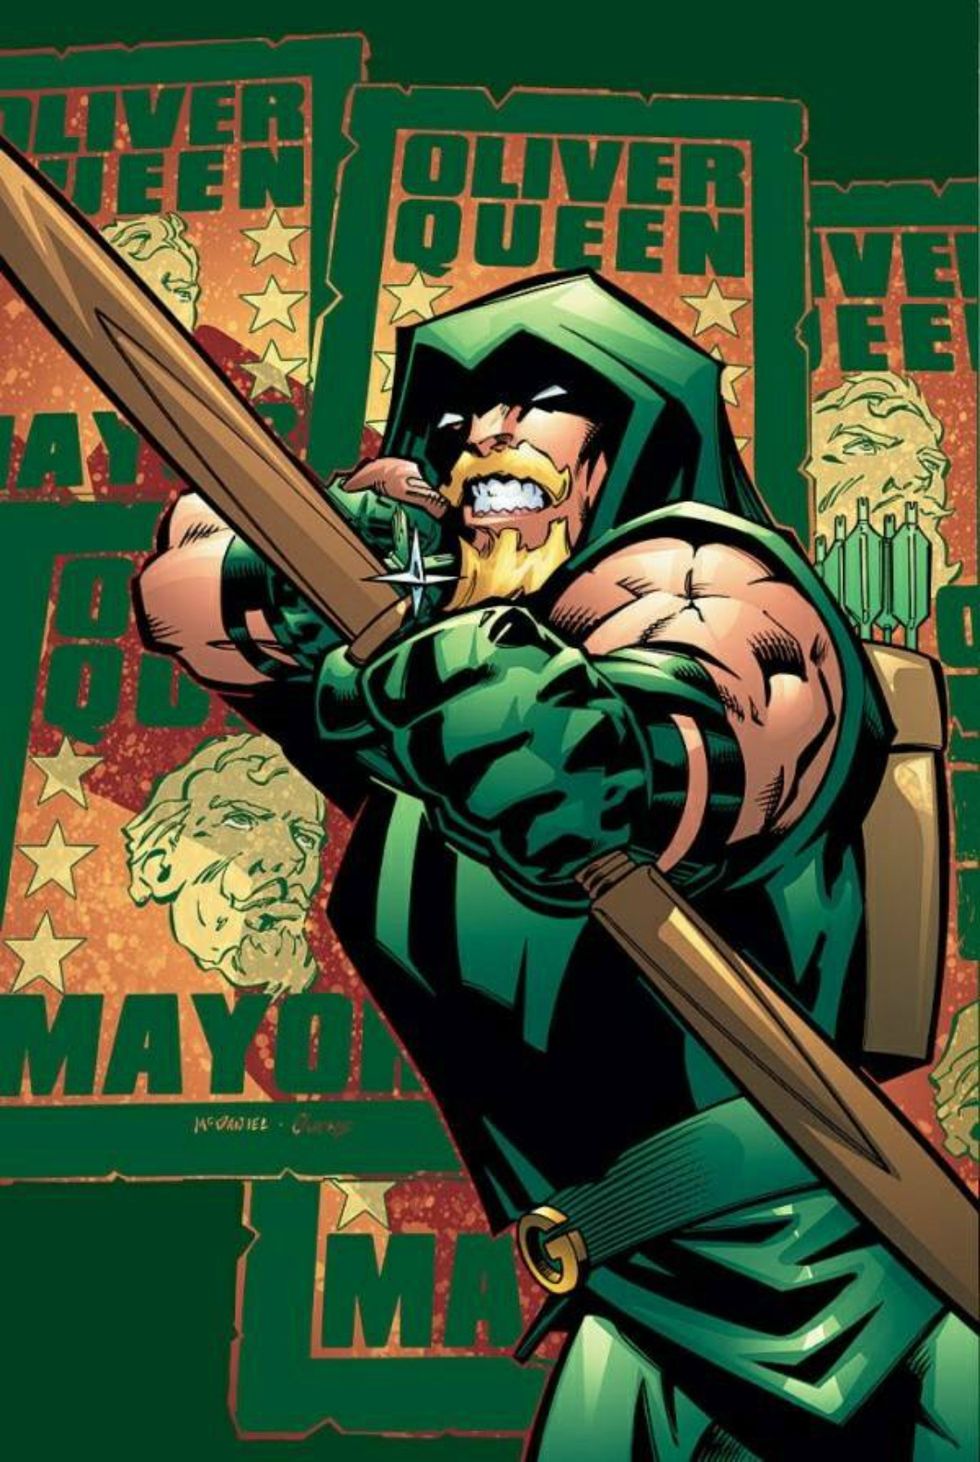 Why I Love Green Arrow More Than Batman